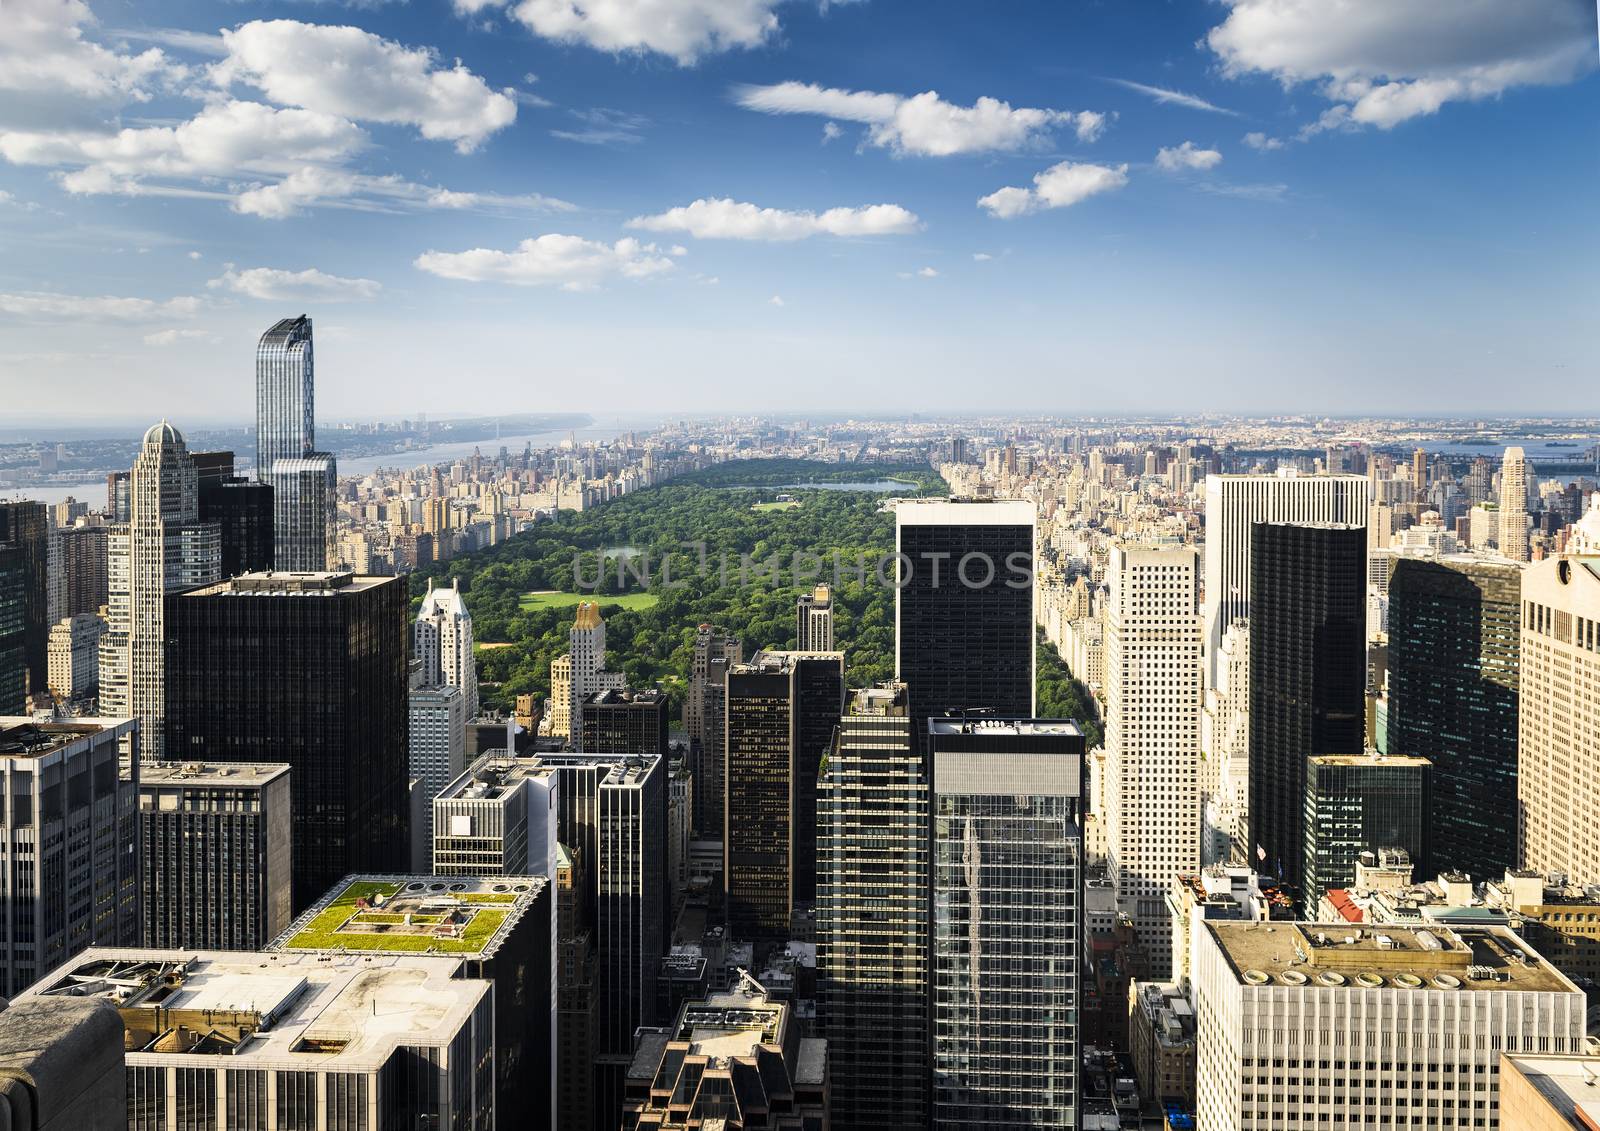 New York City skyline by ventdusud